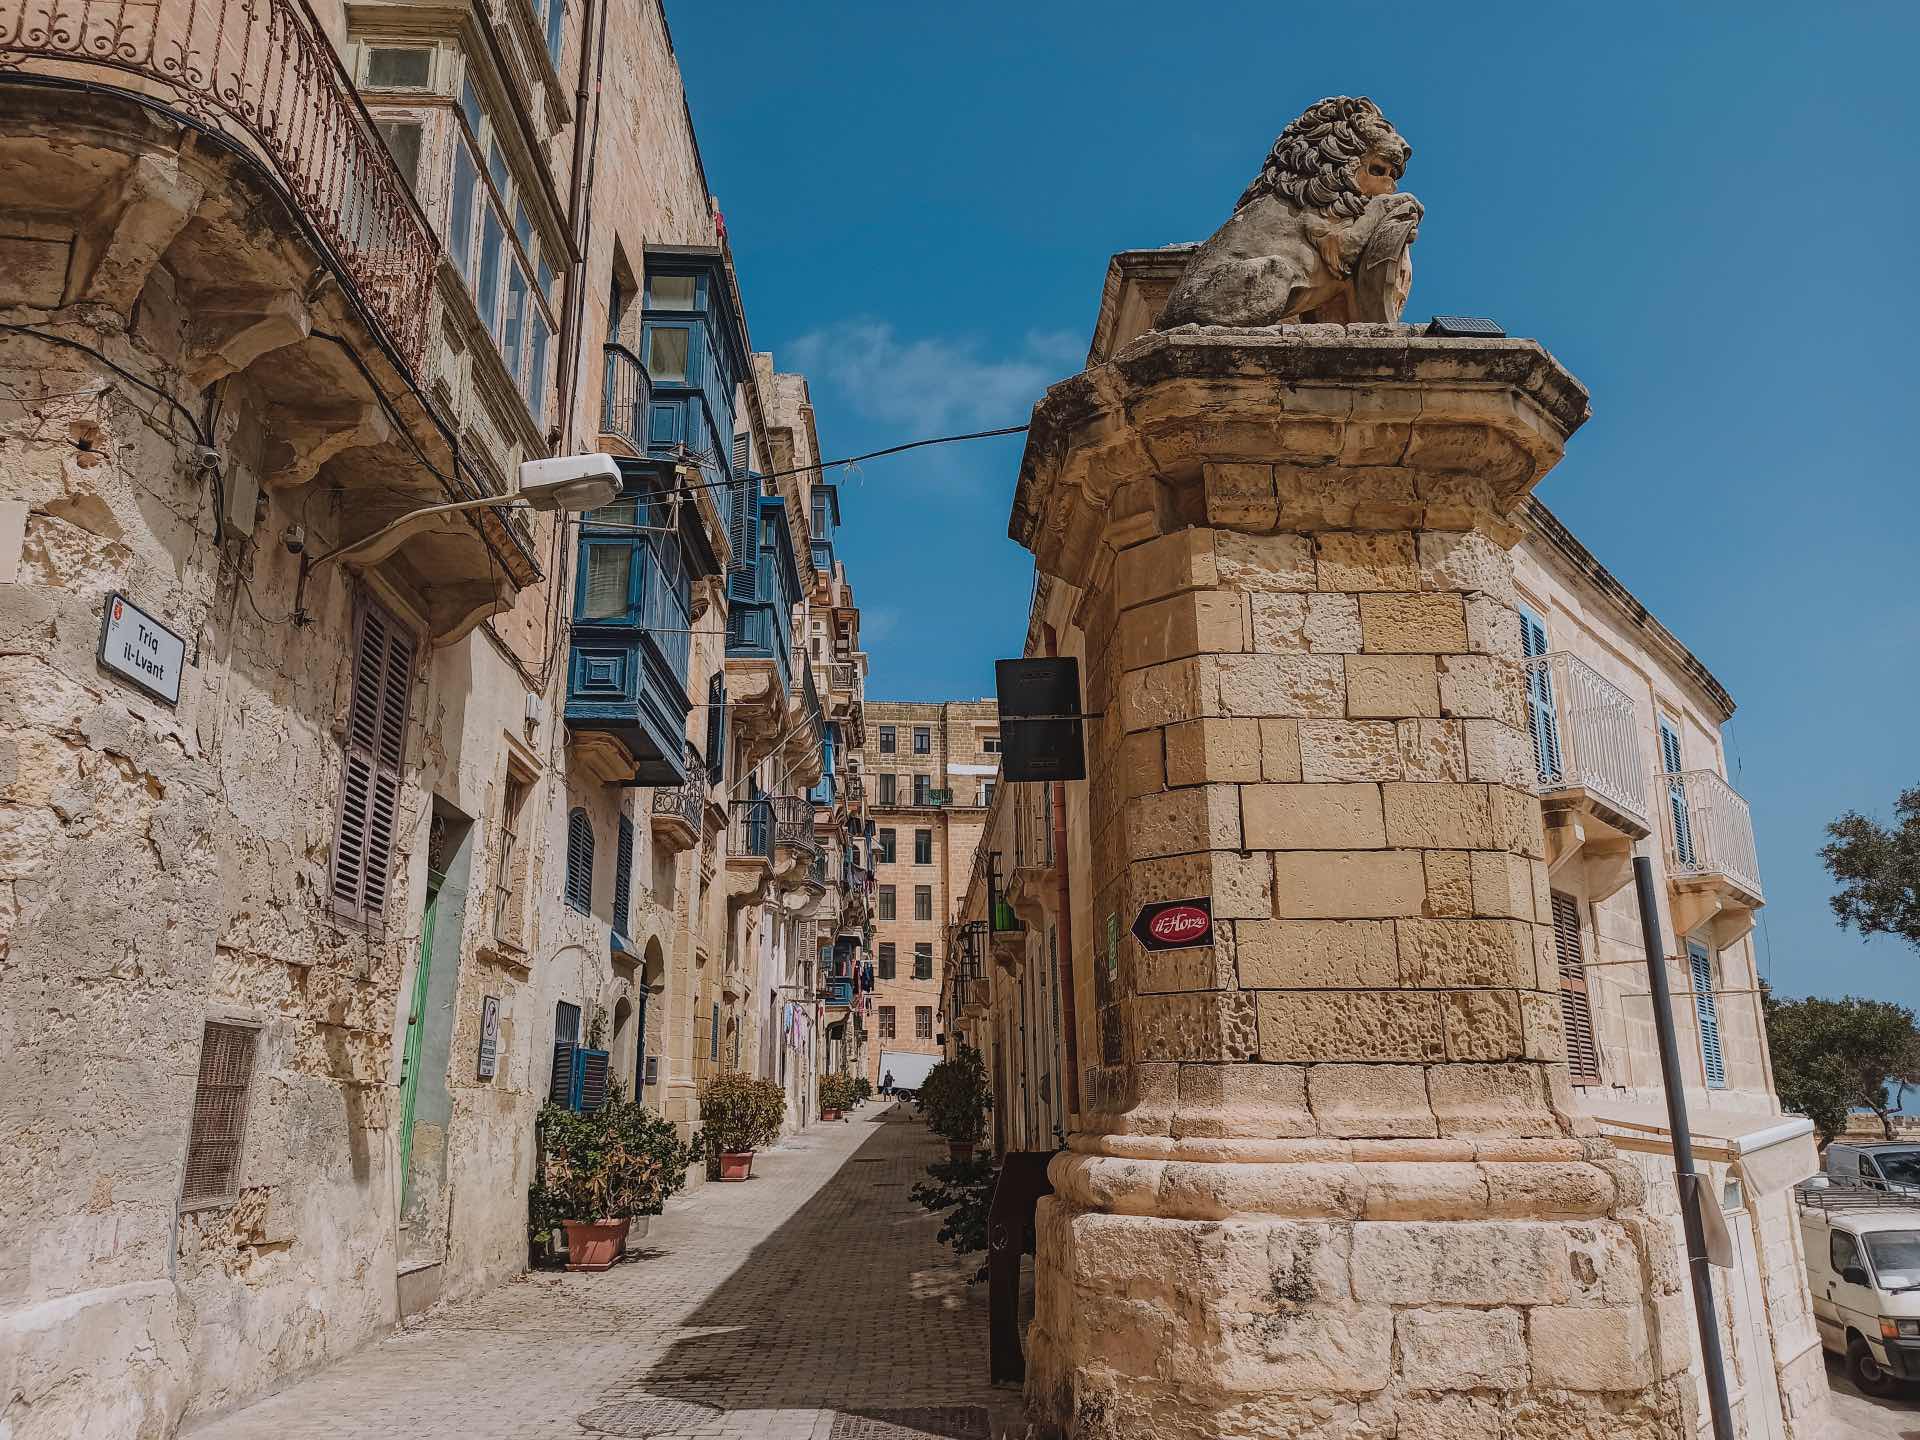 Calle Lvant, una calle preciosa por la que pasear en La Valletta